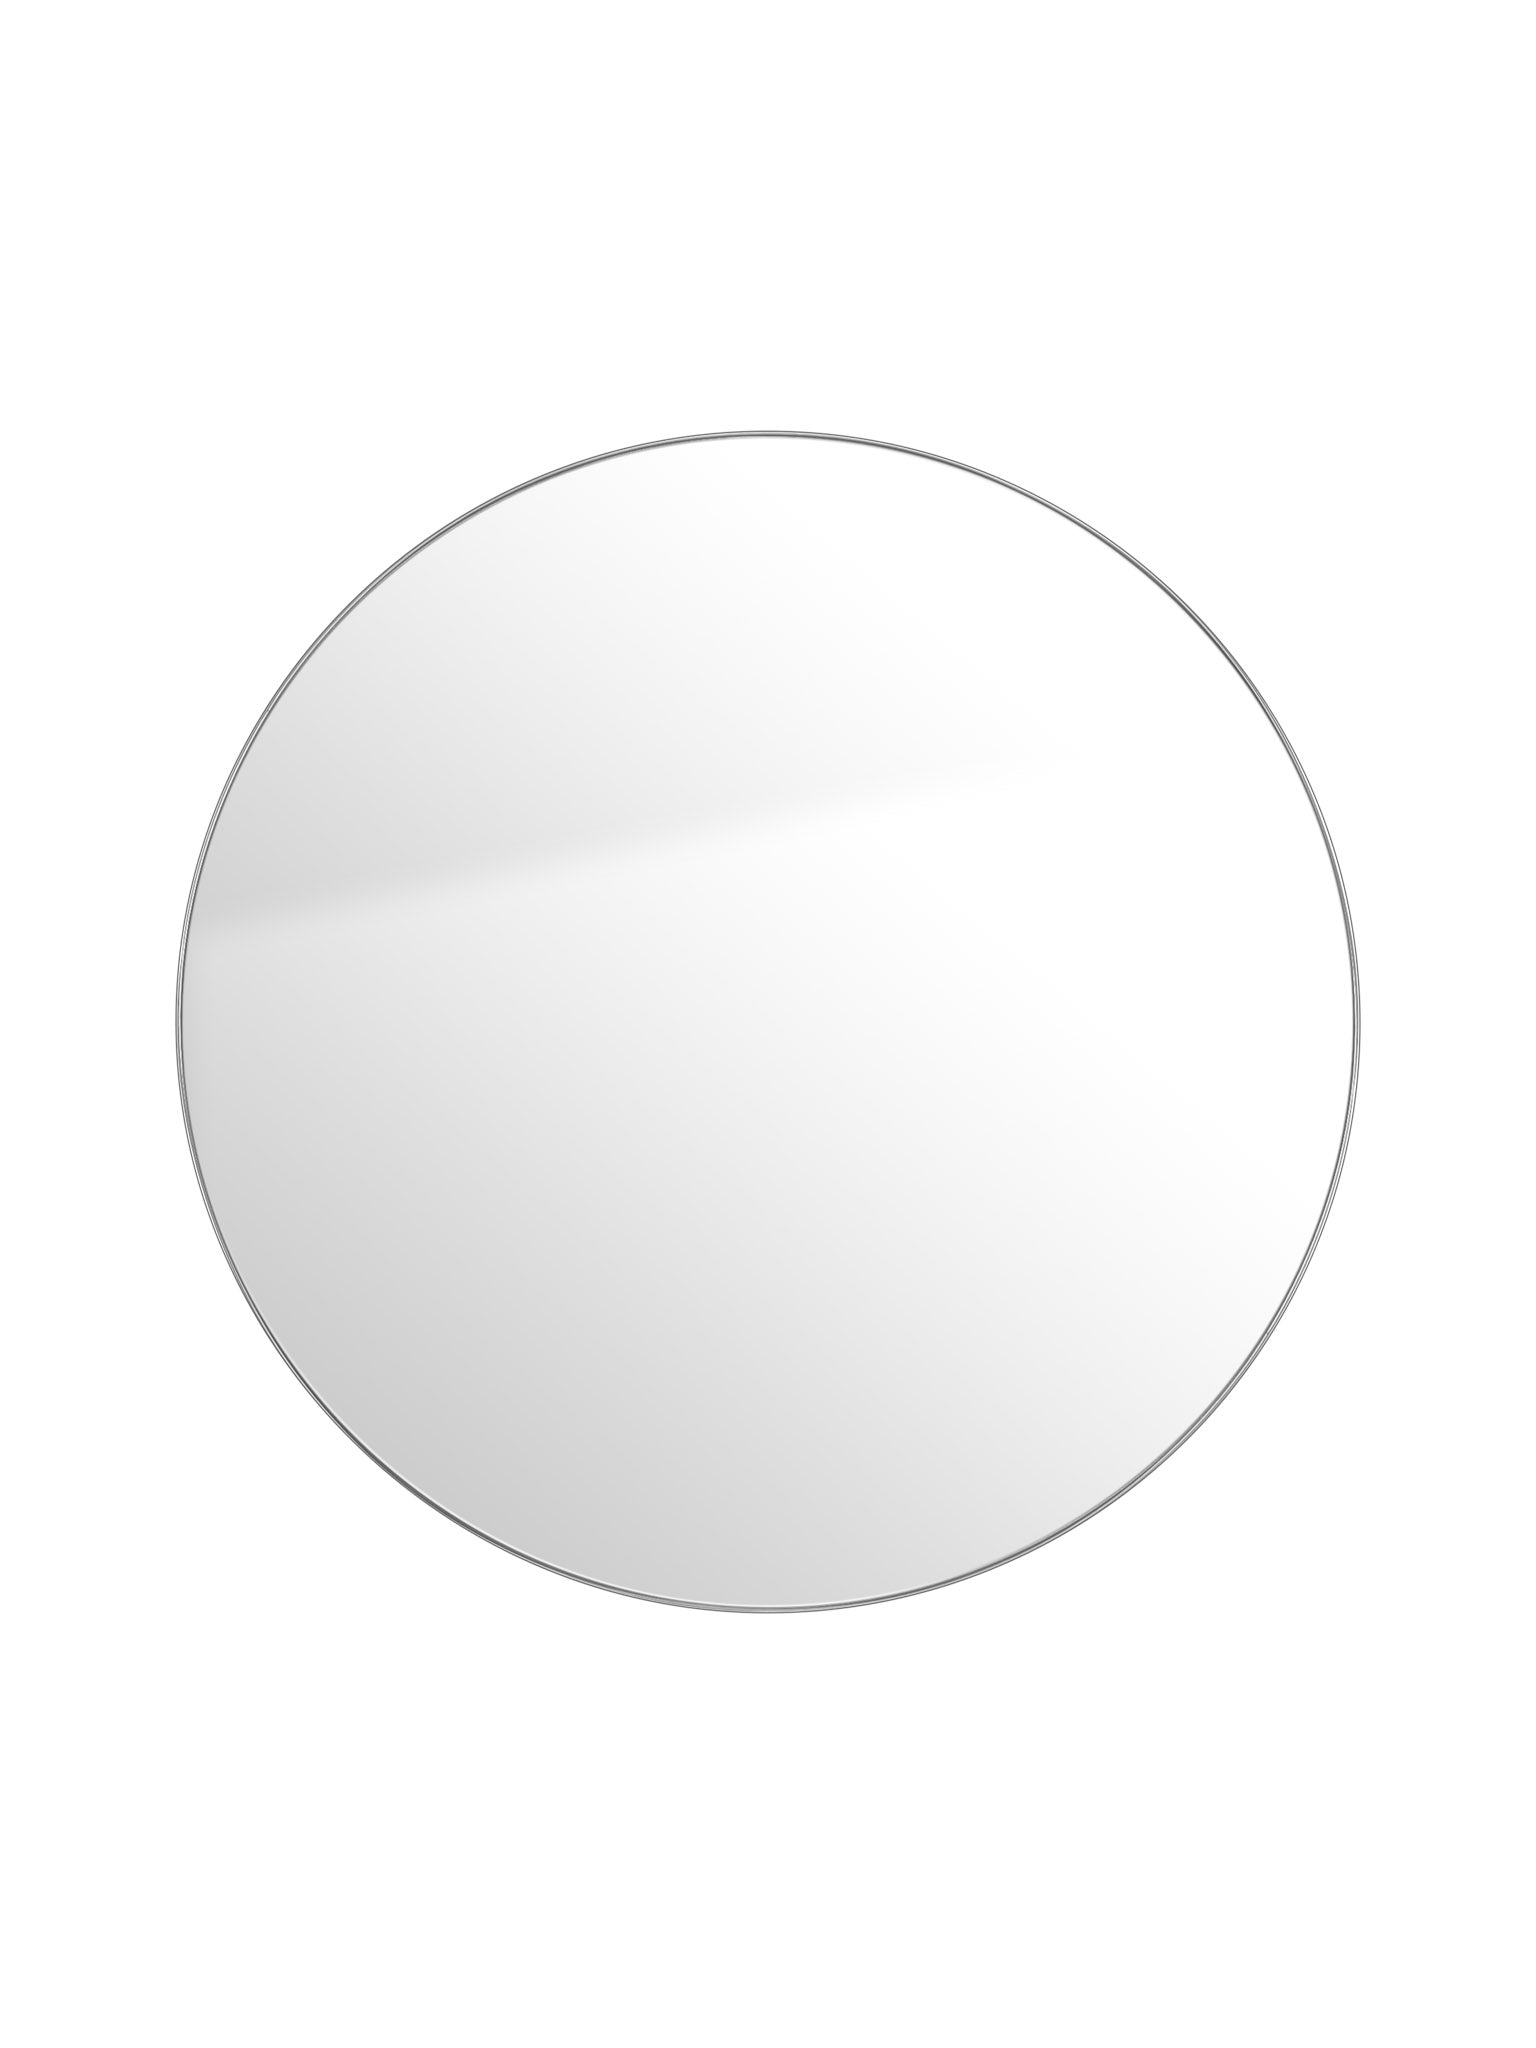 silver round mirror